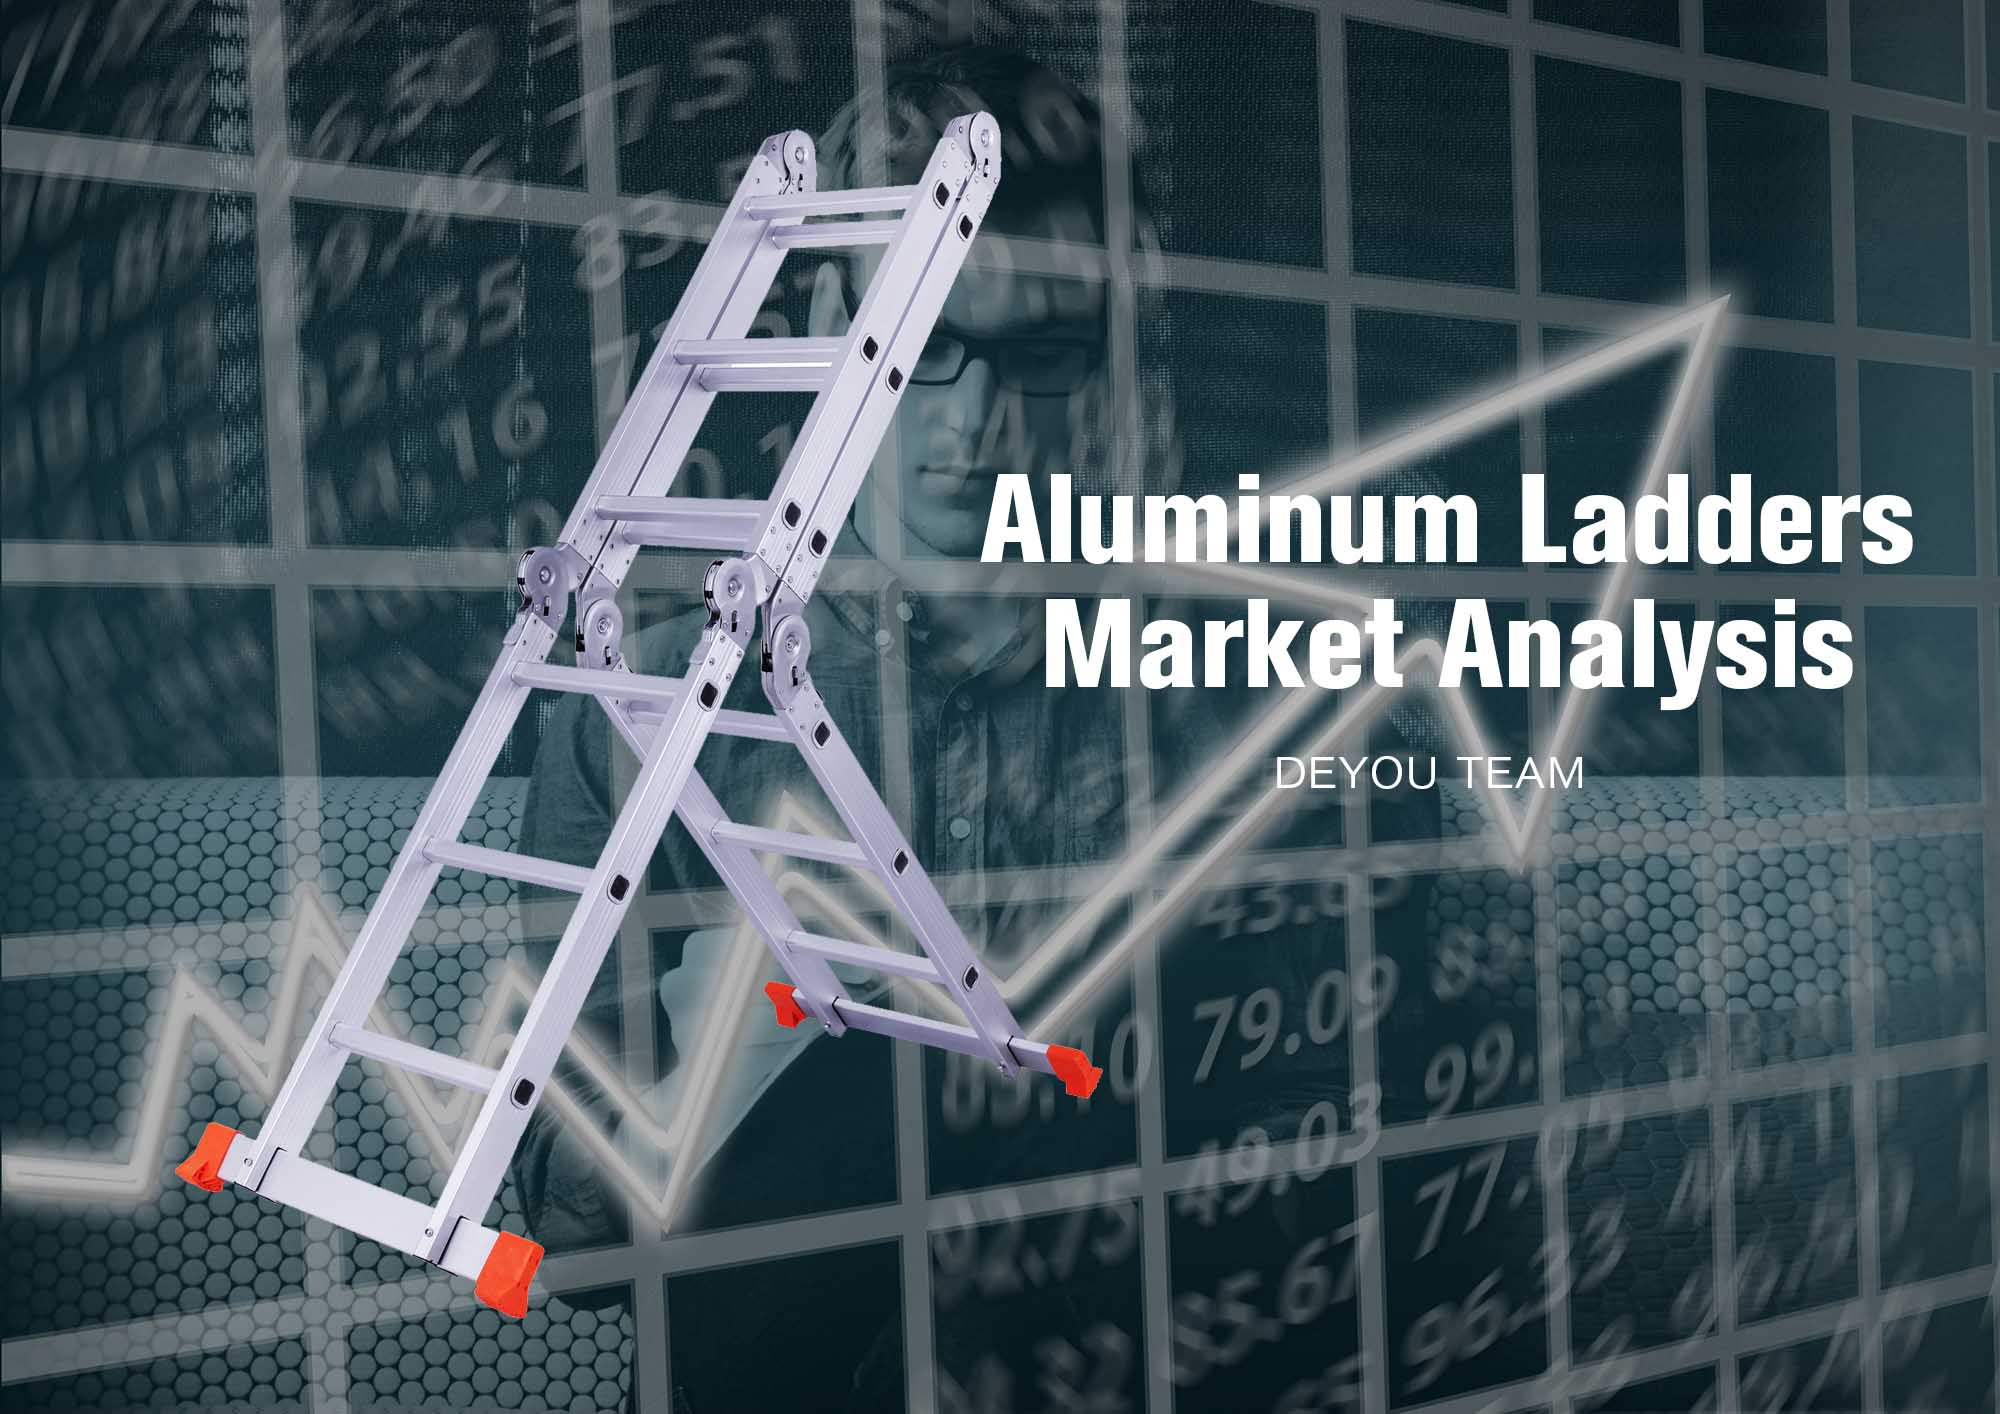 Analyse future du marché des échelles en aluminium